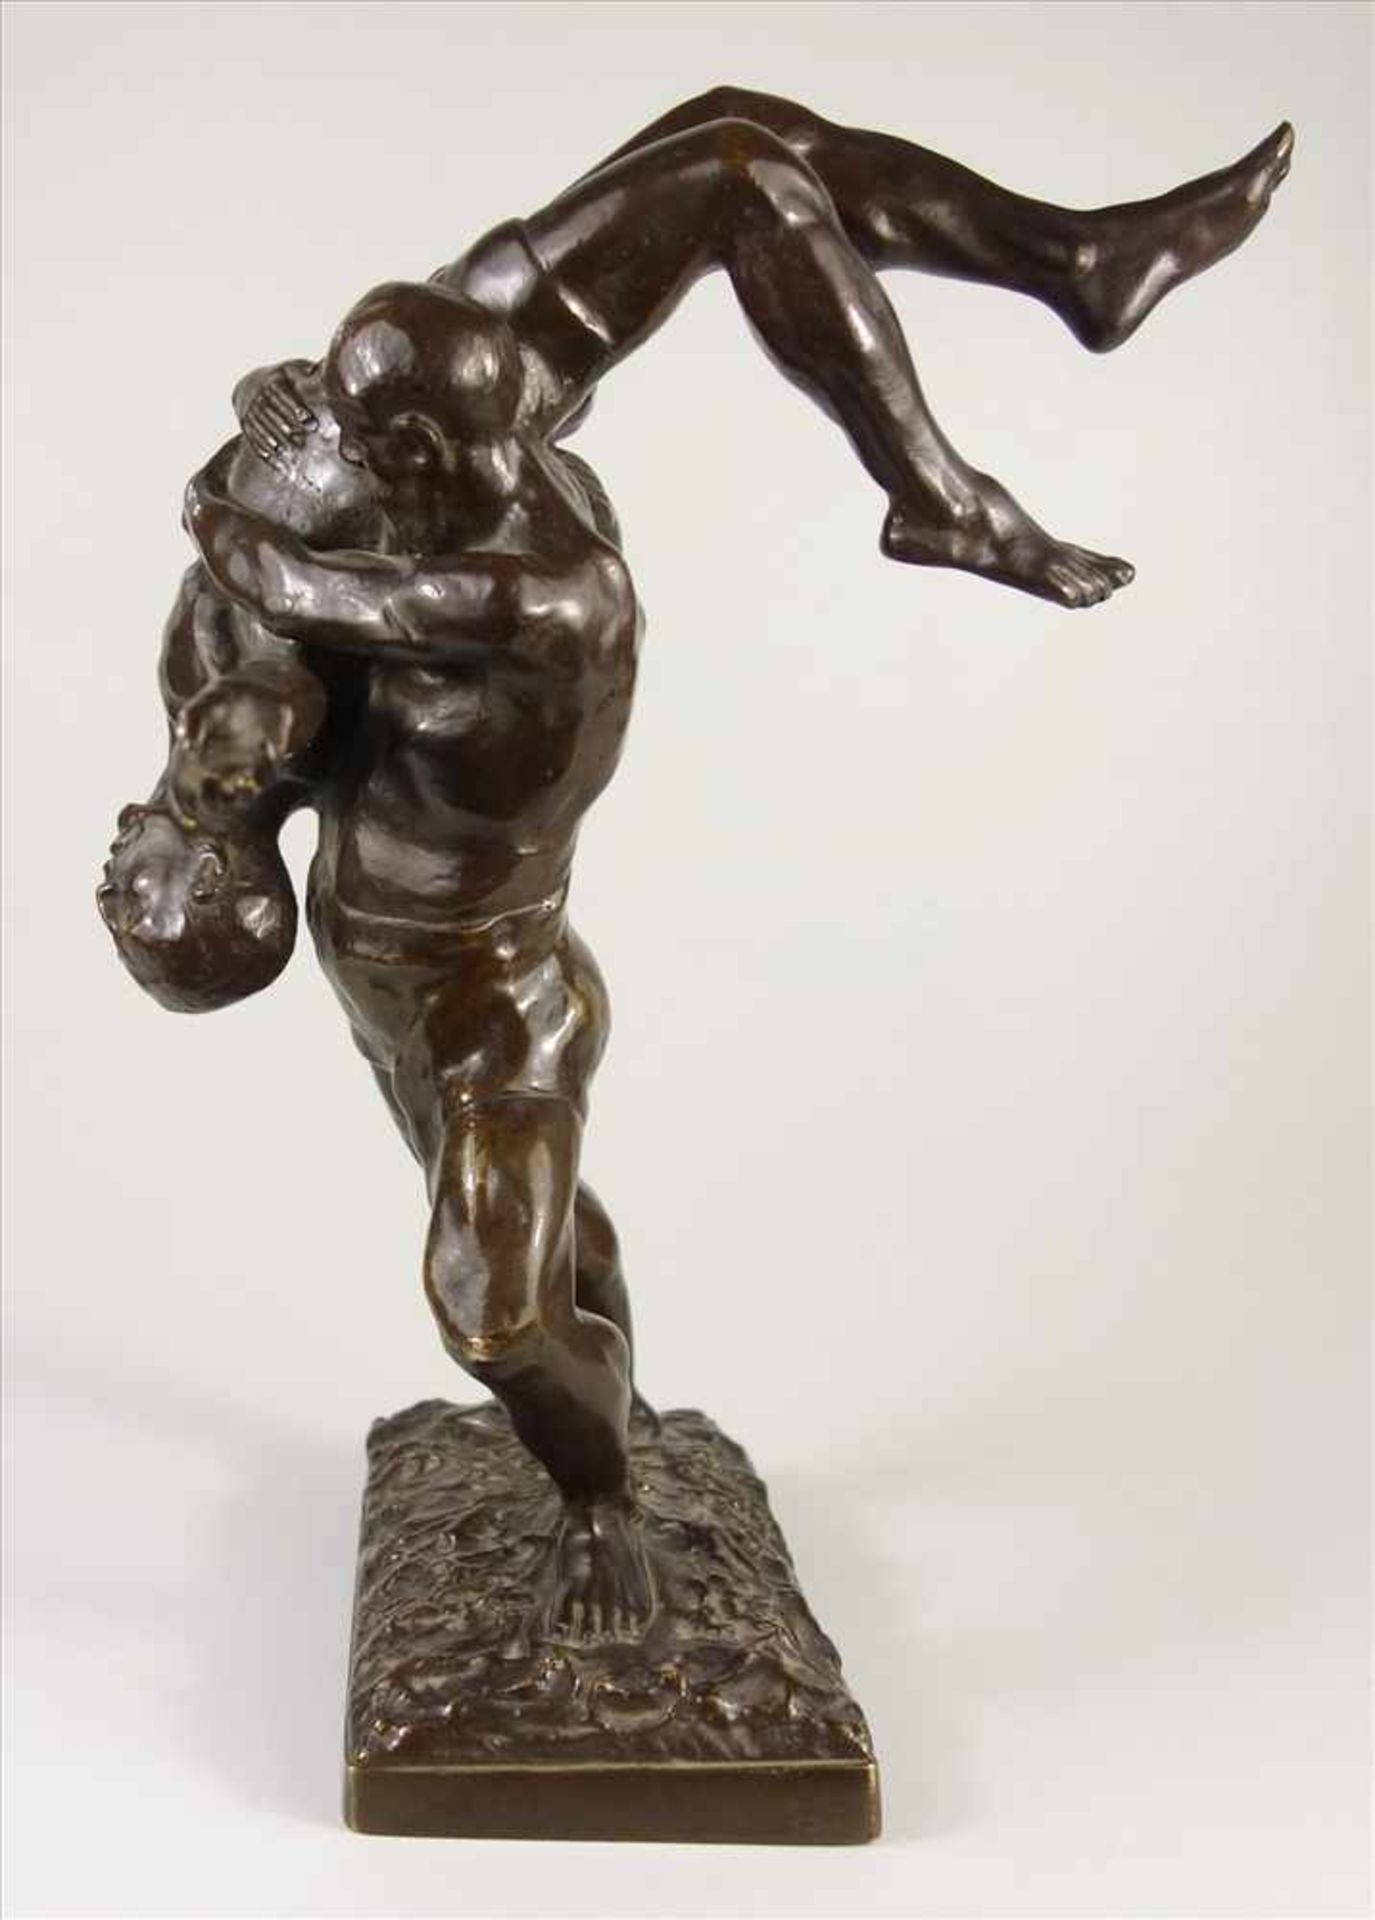 Joseph Alfred van Gent "Ringer", Bronze-Figurengruppe um 1900, van Gent, geb 1877; in Plinthe - Bild 2 aus 6